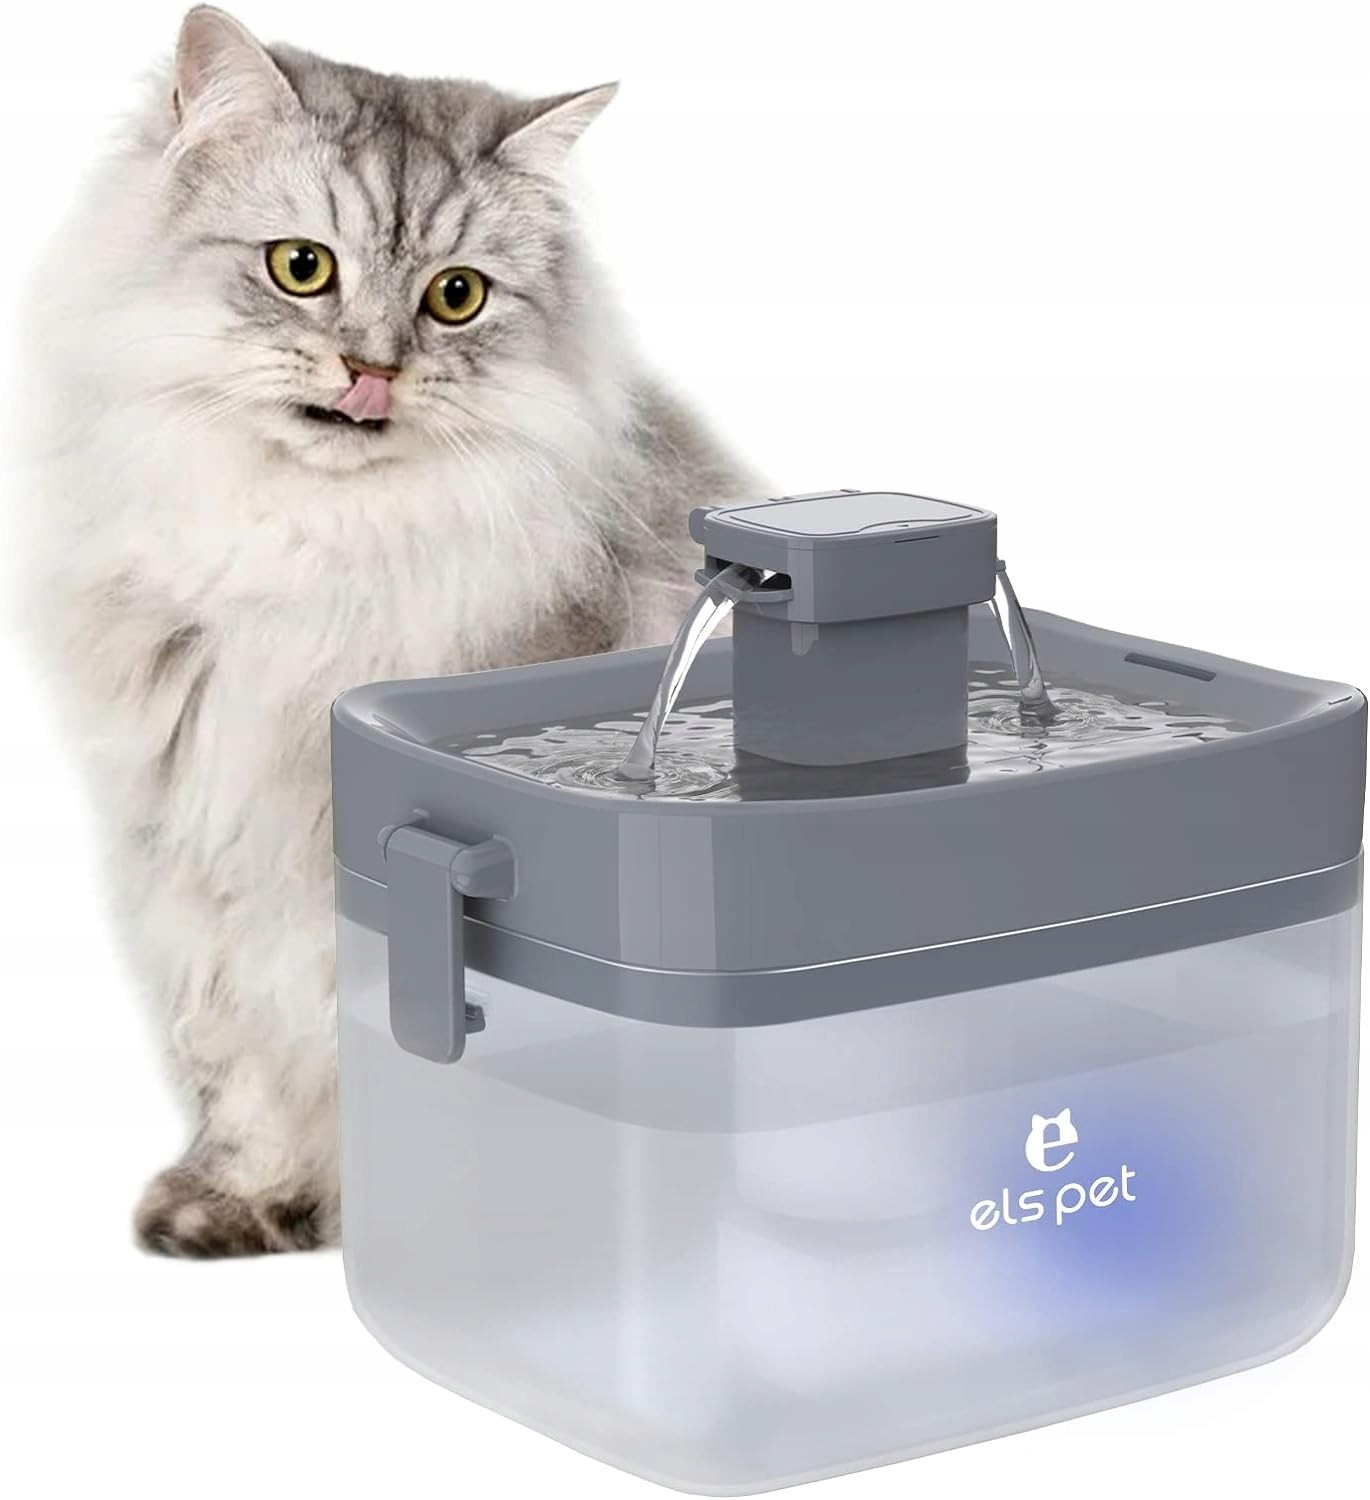 Podavač fontána vody pro kočky.